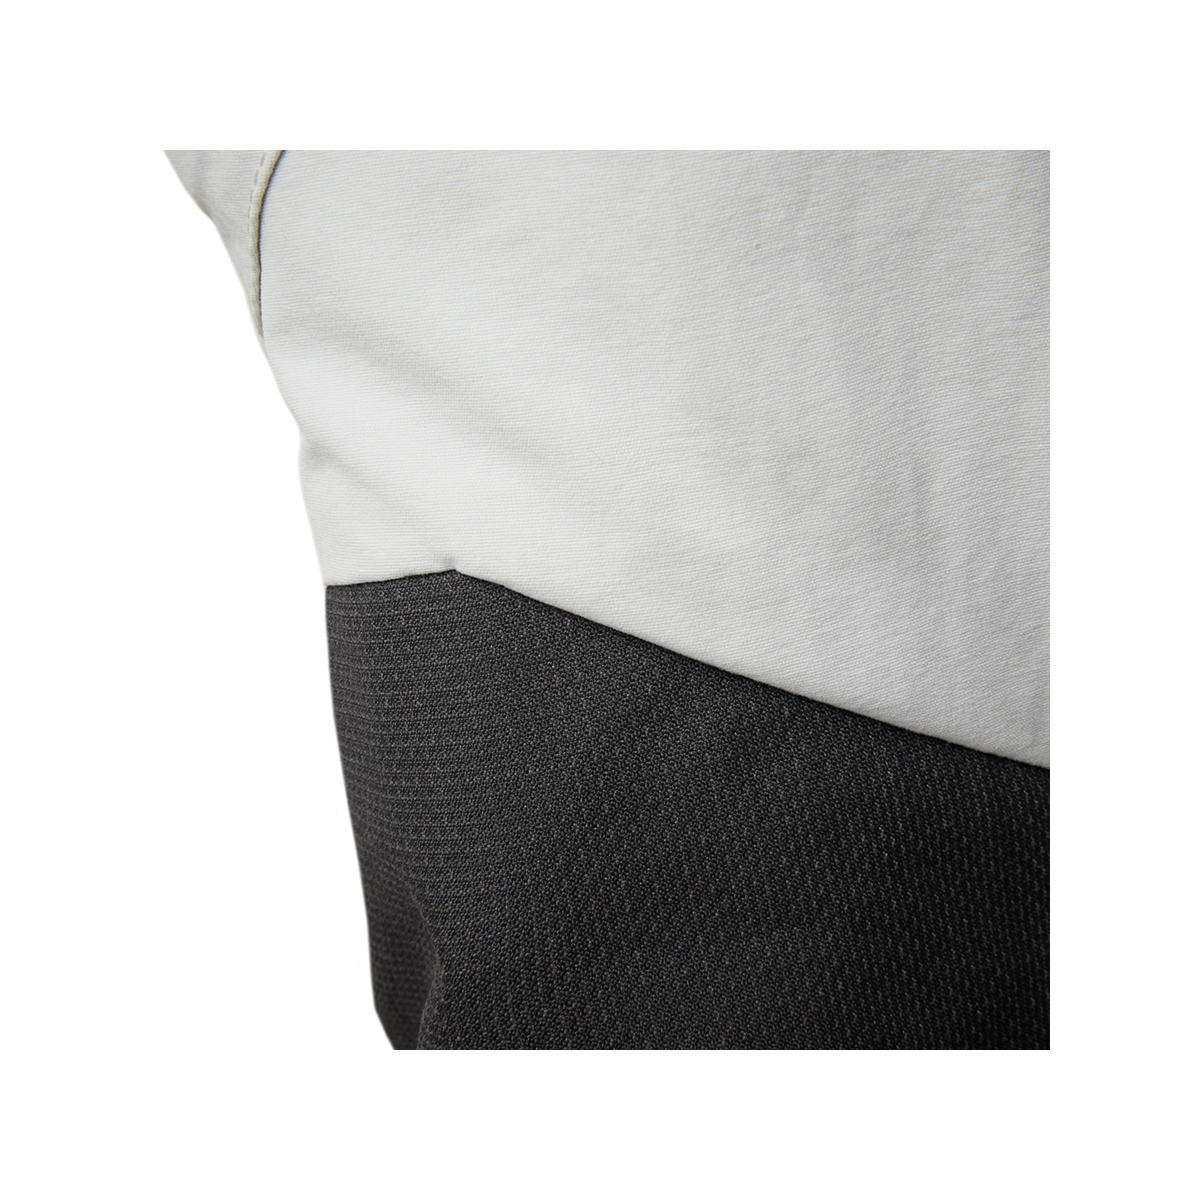 Musto Evolution Performance pantalon de voile 2.0 homme gris clair, taille 36